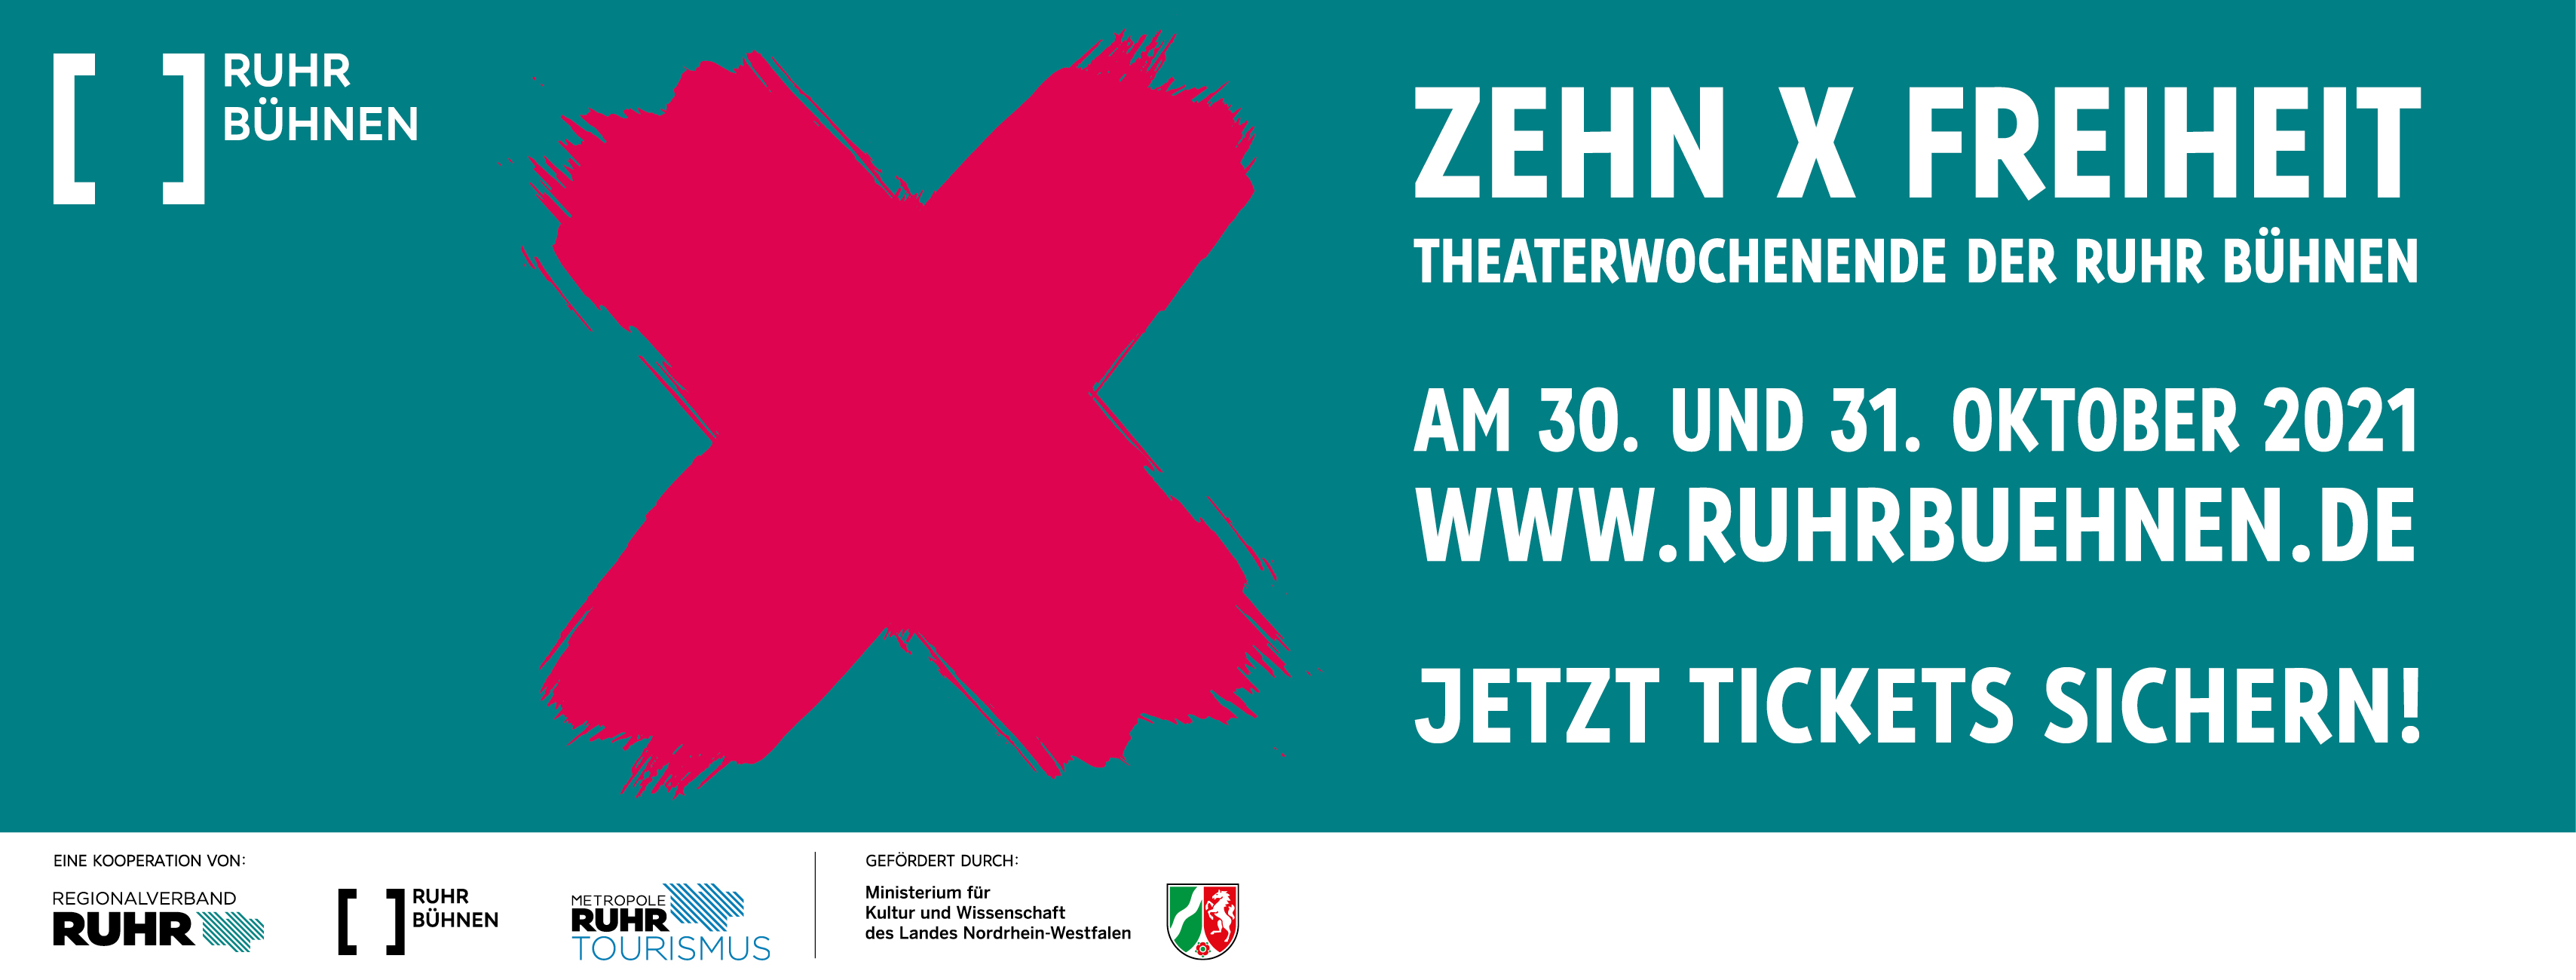 Das Bild zeigt einen türkisen Hintergrund, darauf das Logo der RuhrBühnen. Im Text steht: Zehn Mal Freiheit, Theaterwochenende der Ruhr Bühnen am 30. und 31. Oktober 2021. Jetzt Tickets sichern! 